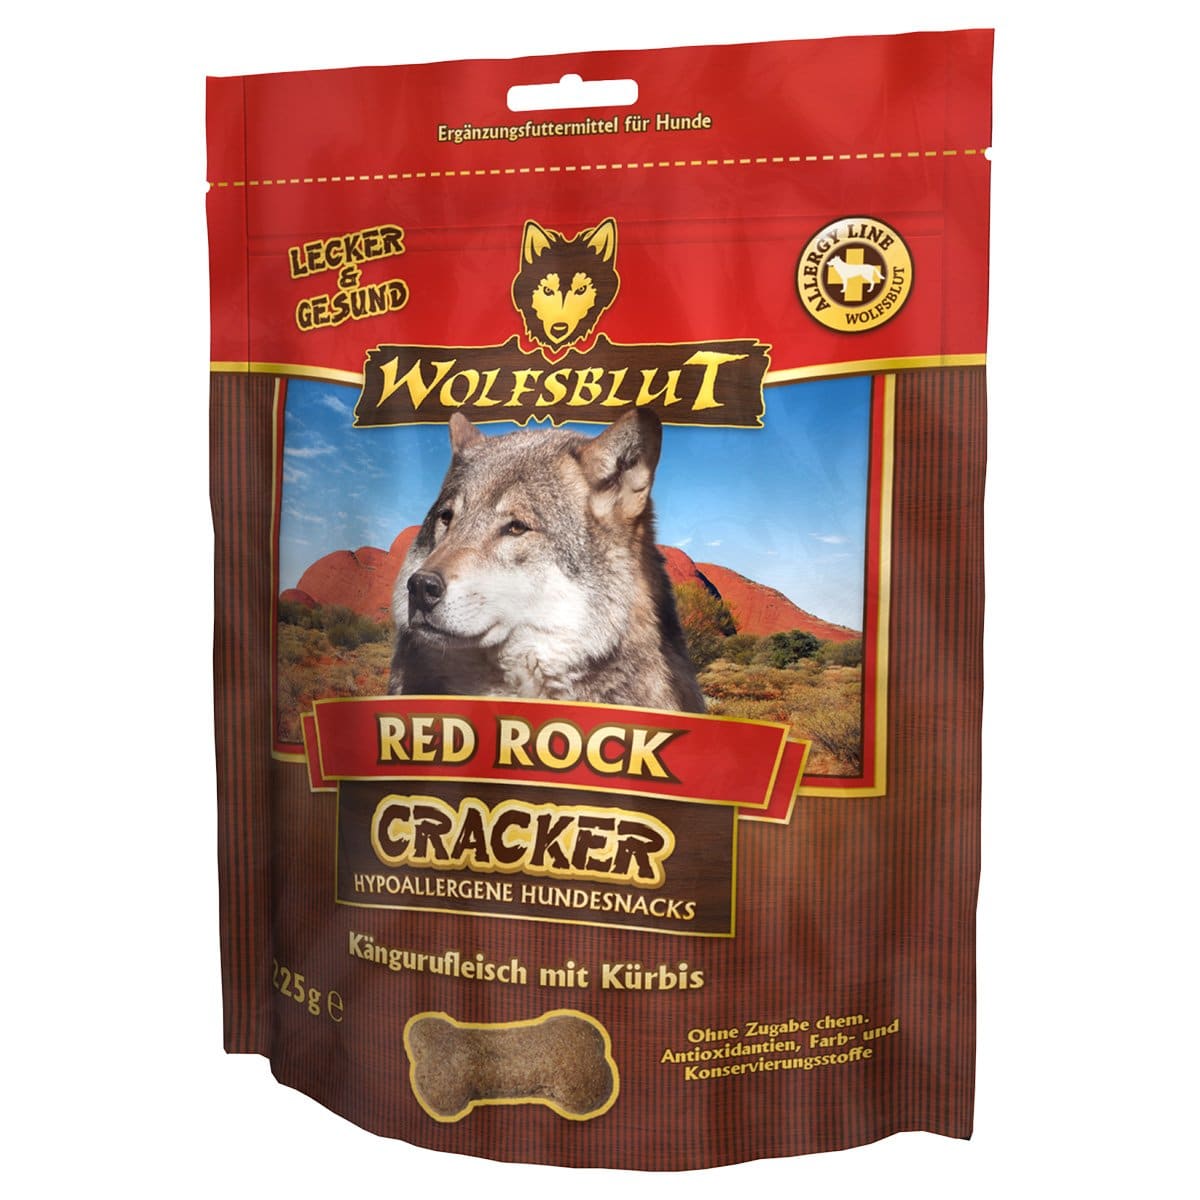 Wolfsblut Cracker Red Rock Känguru 225g